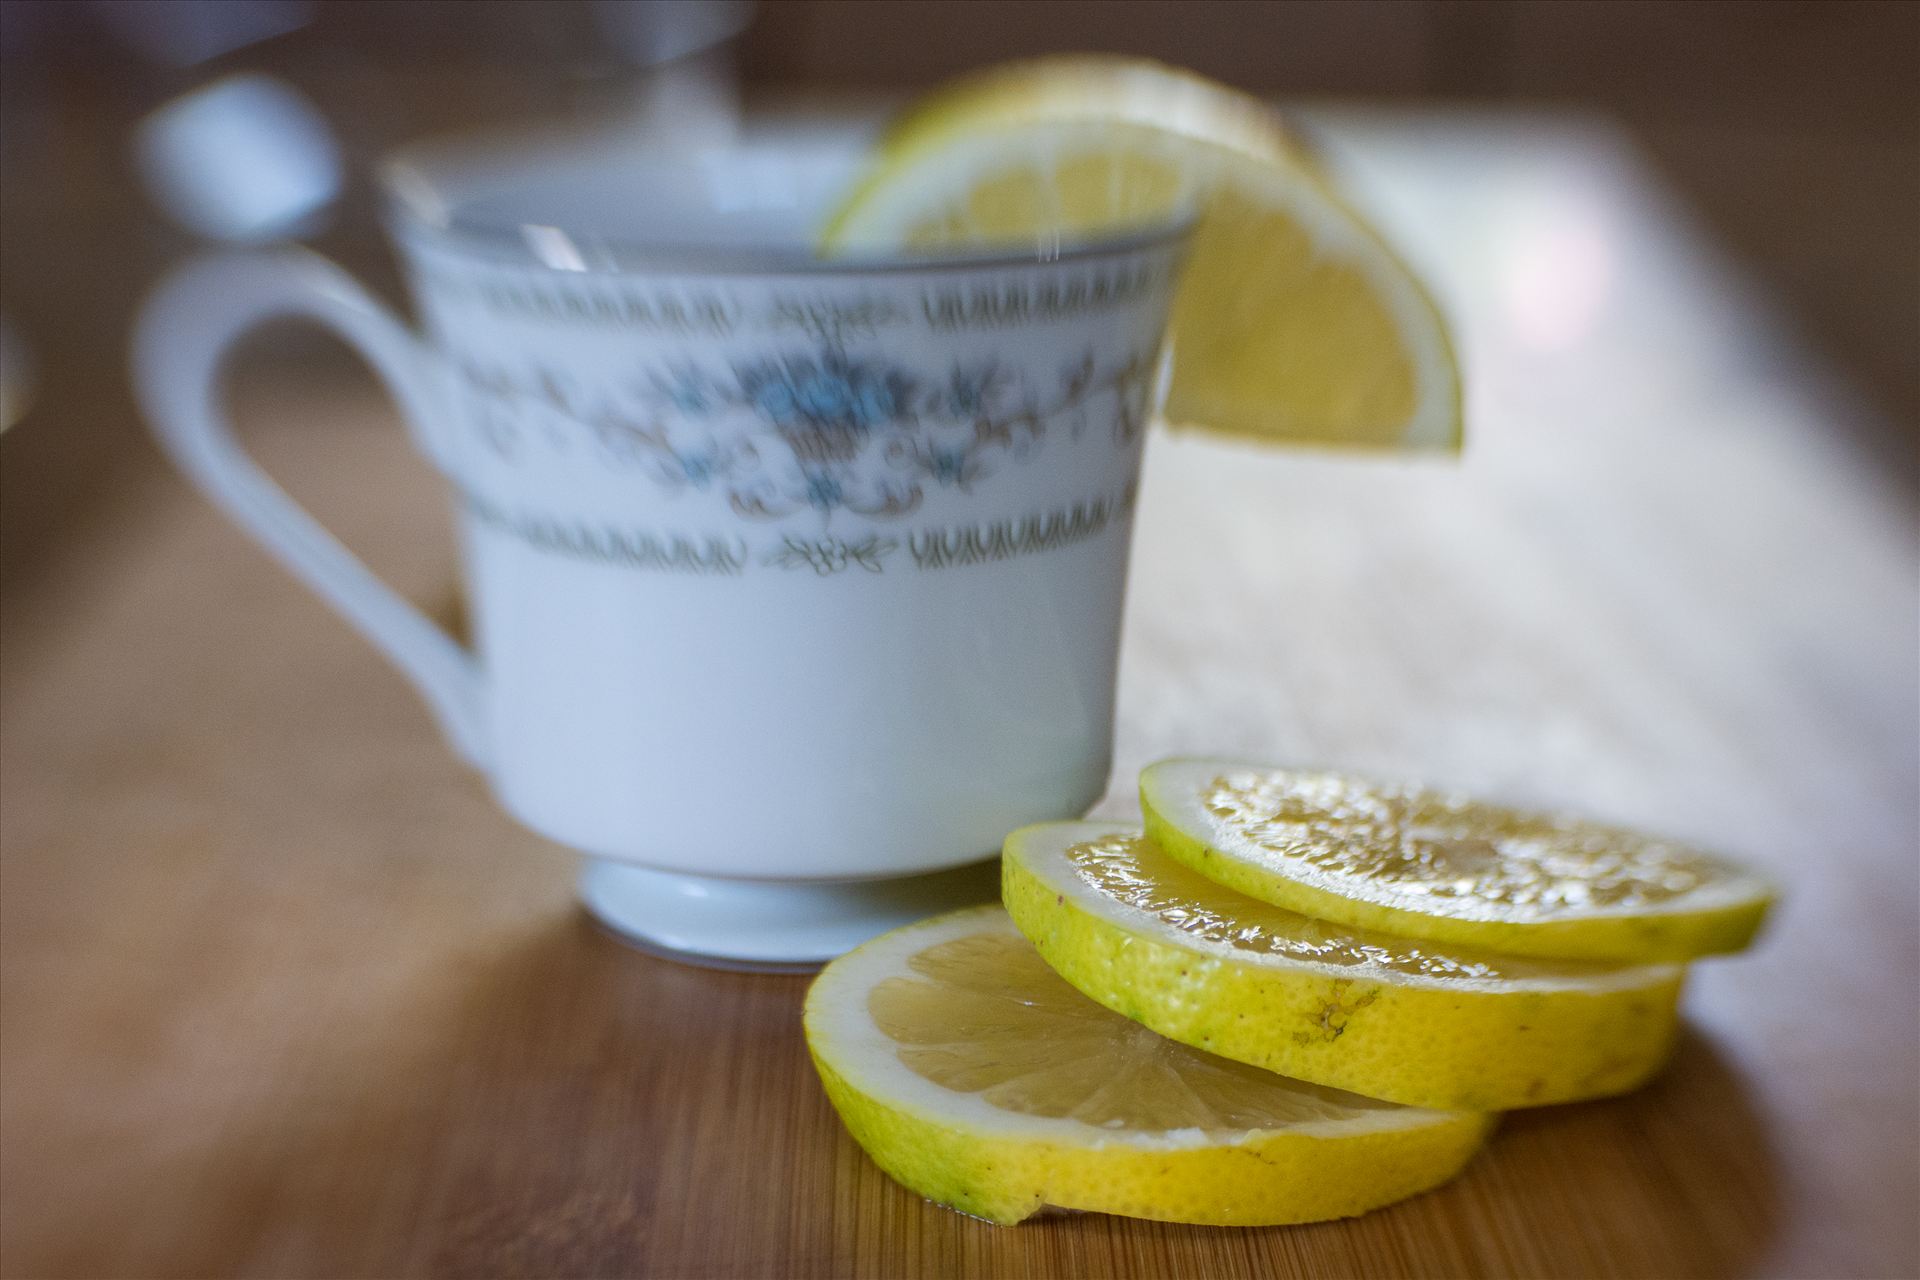 Tea With Lemon.jpg Morning tea with fresh sliced lemon by Sarah Williams